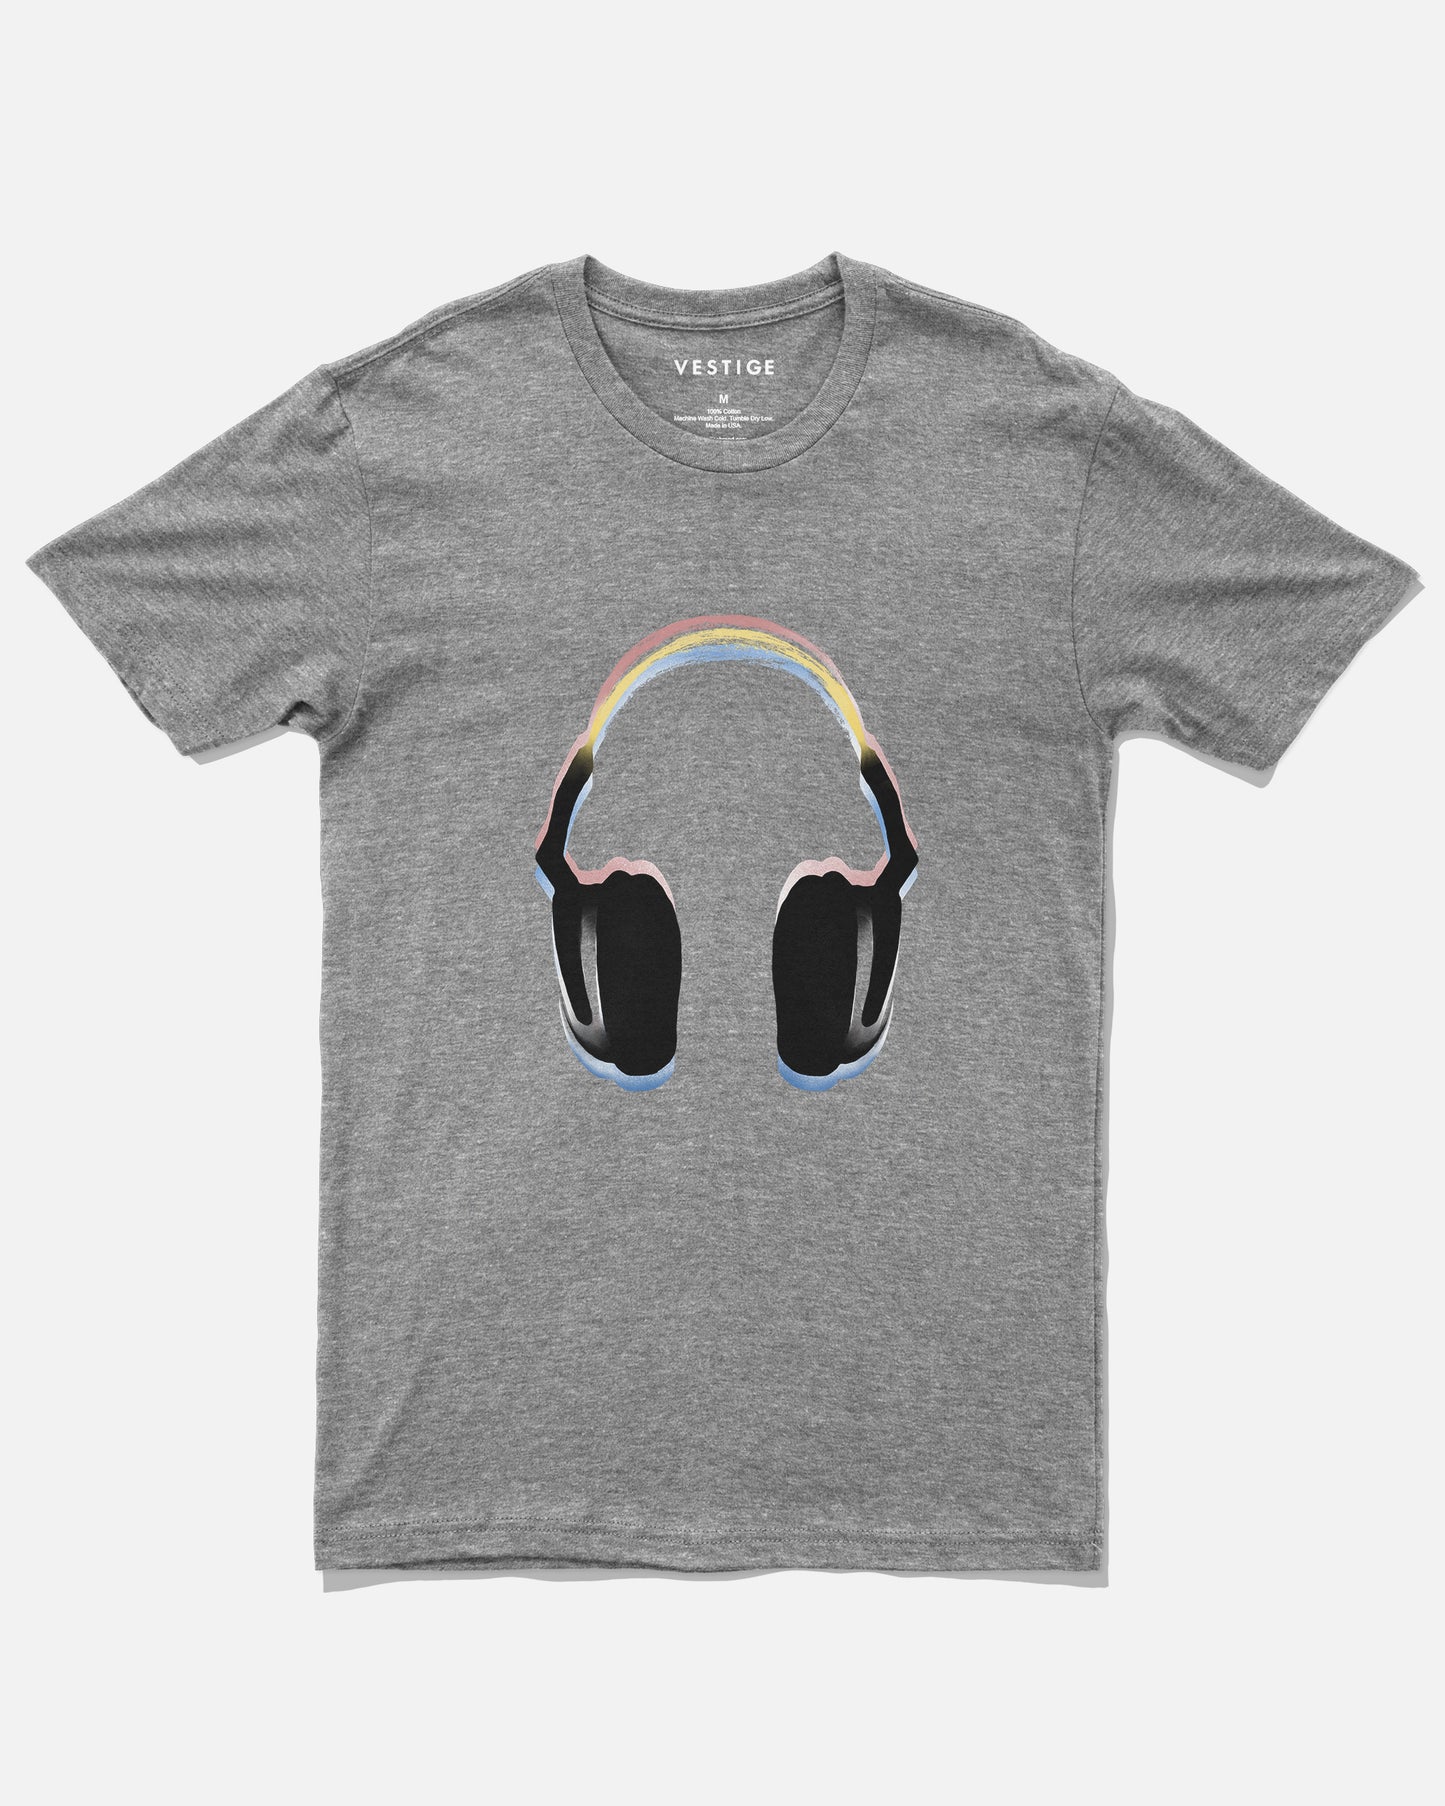 Headphones Tee, Grey Tri-Blend